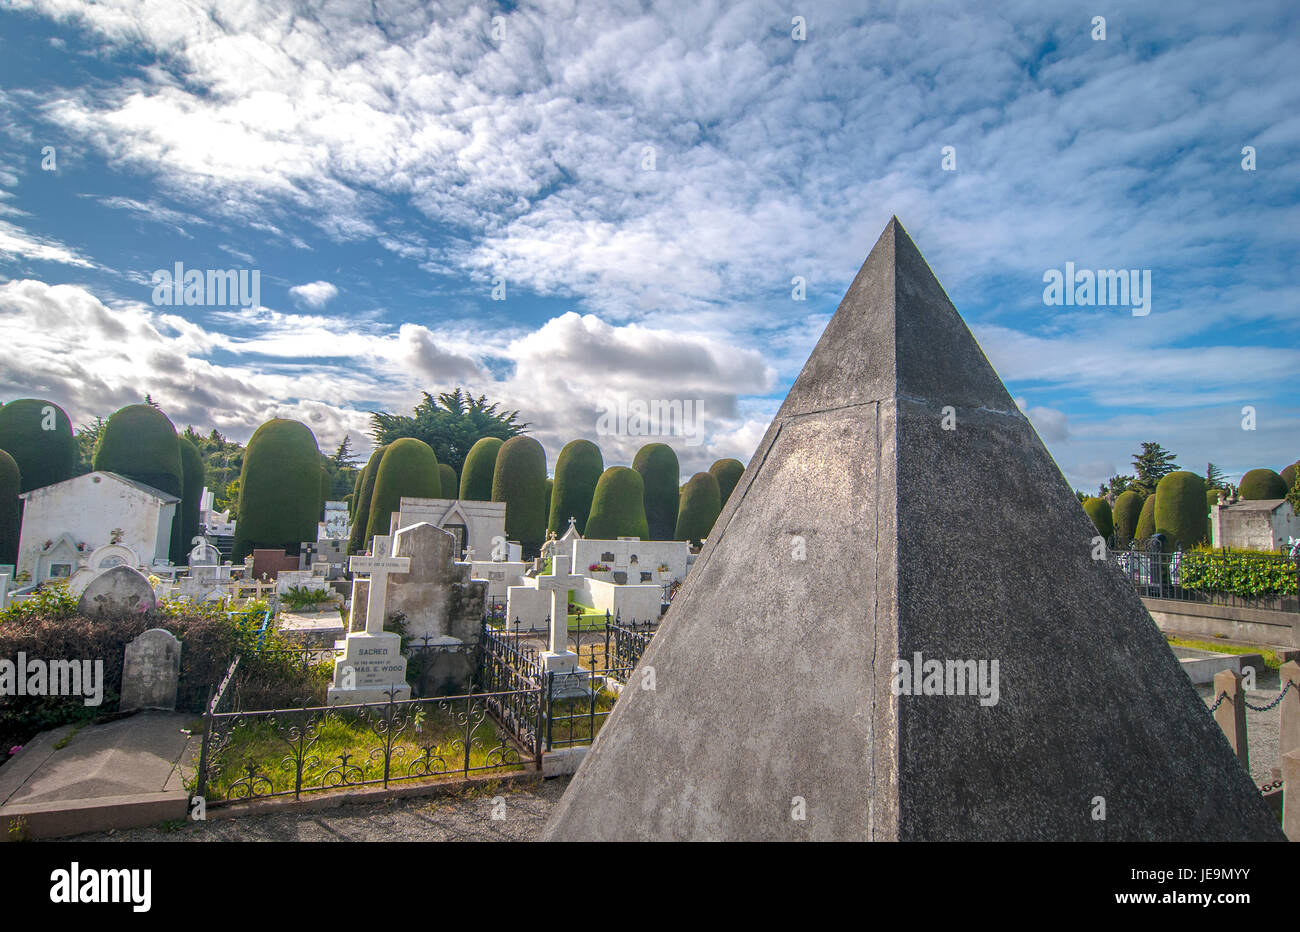 Cementerio de Punta Arenas / Cemetery Stock Photo